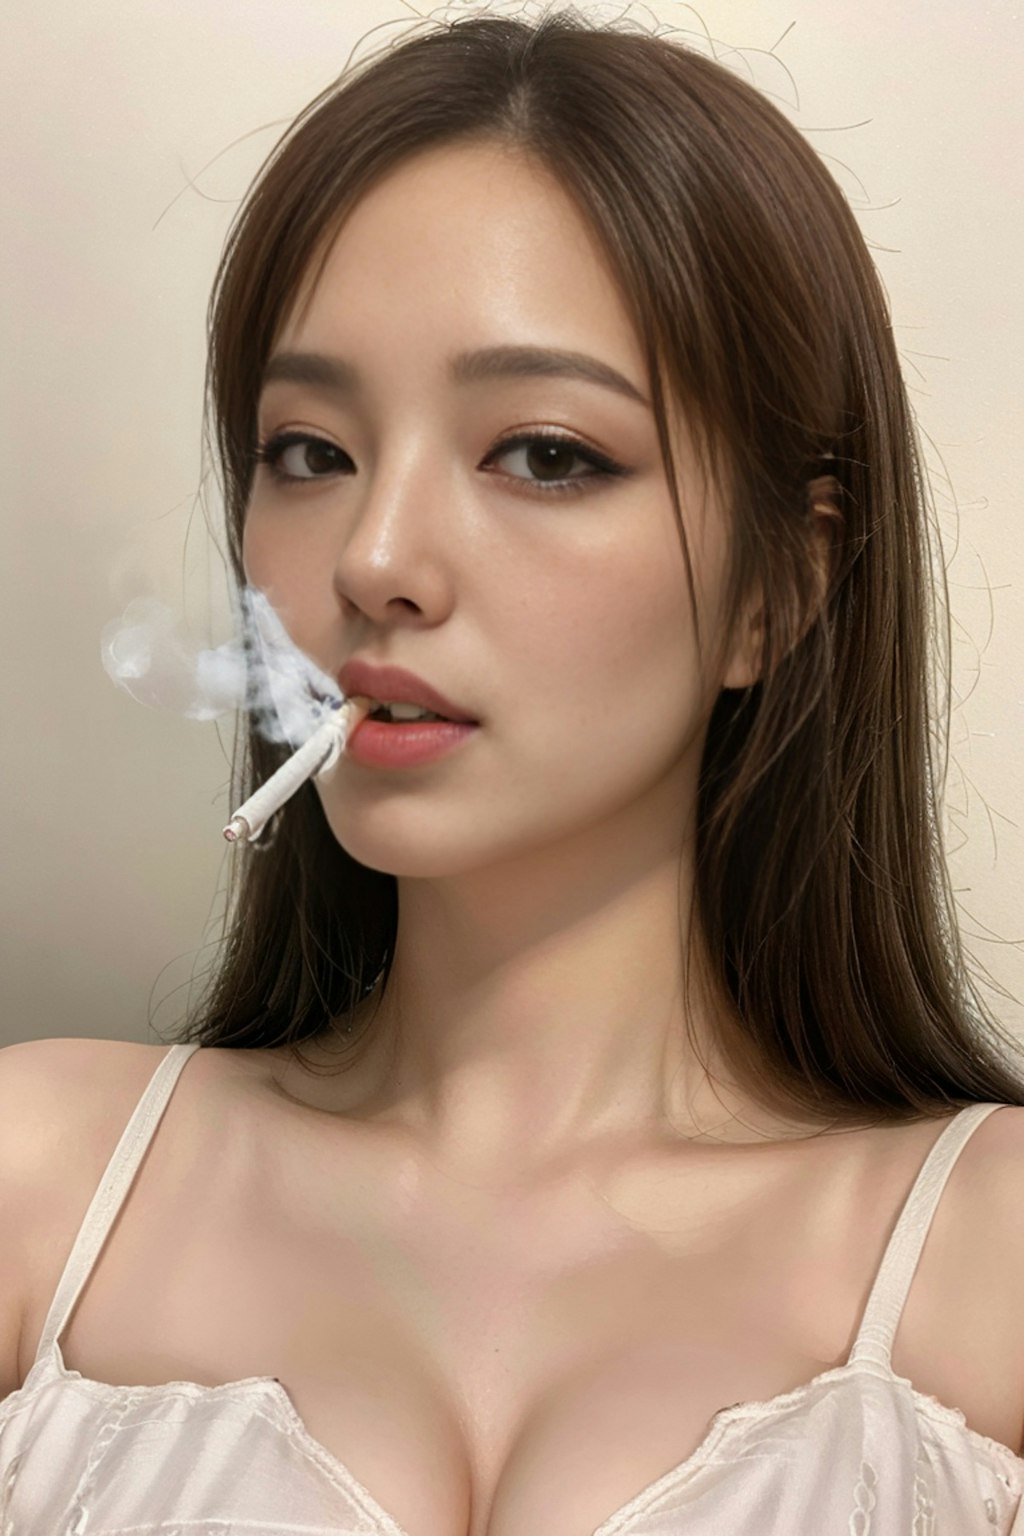 煙草を吸う女2